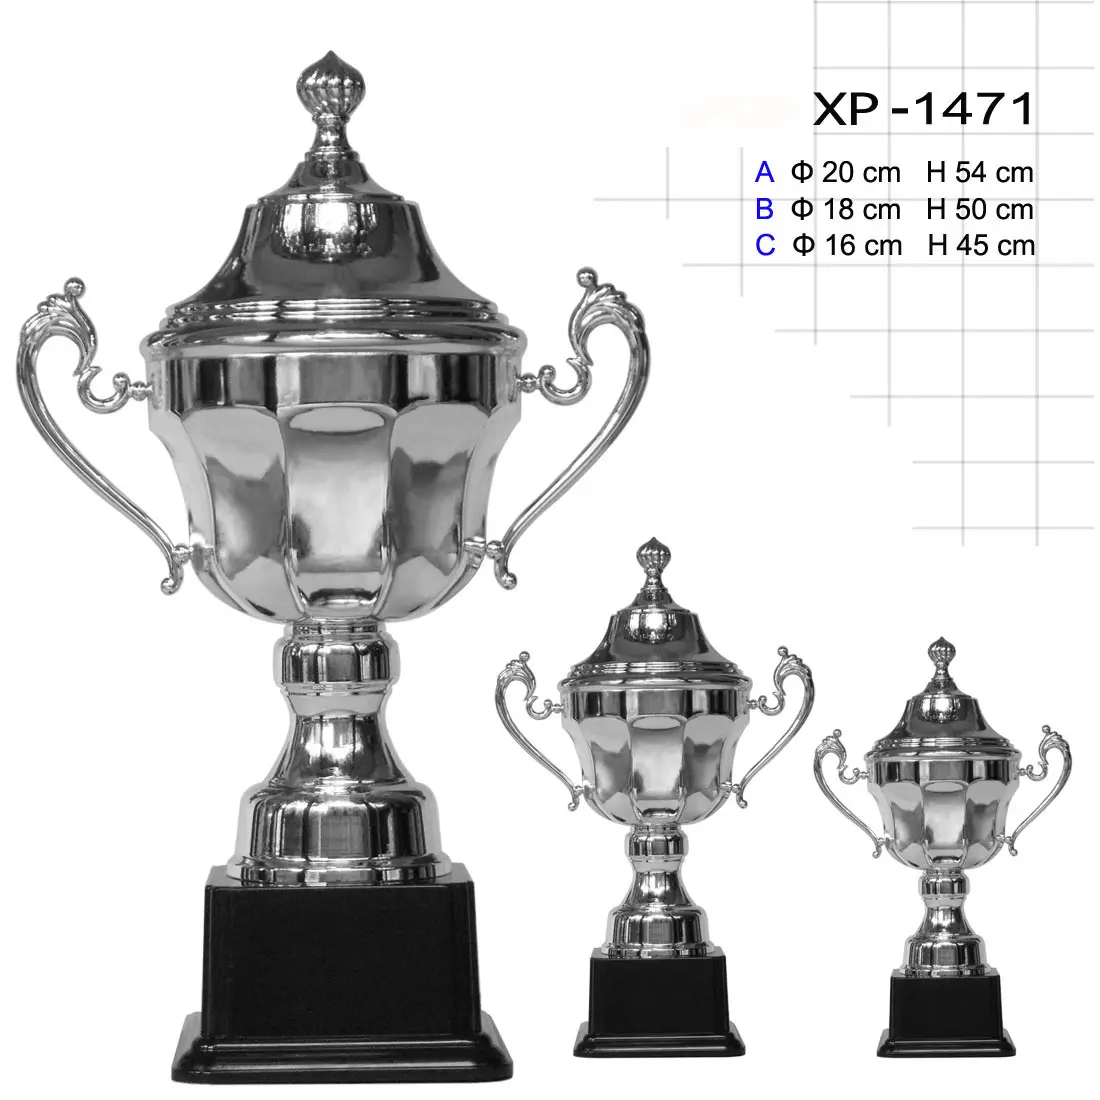 Piala piala perak berlapis kuningan Piala Piala Piala Olahraga penghargaan sepak bola trofi logam kustom penghargaan logam kelas atas